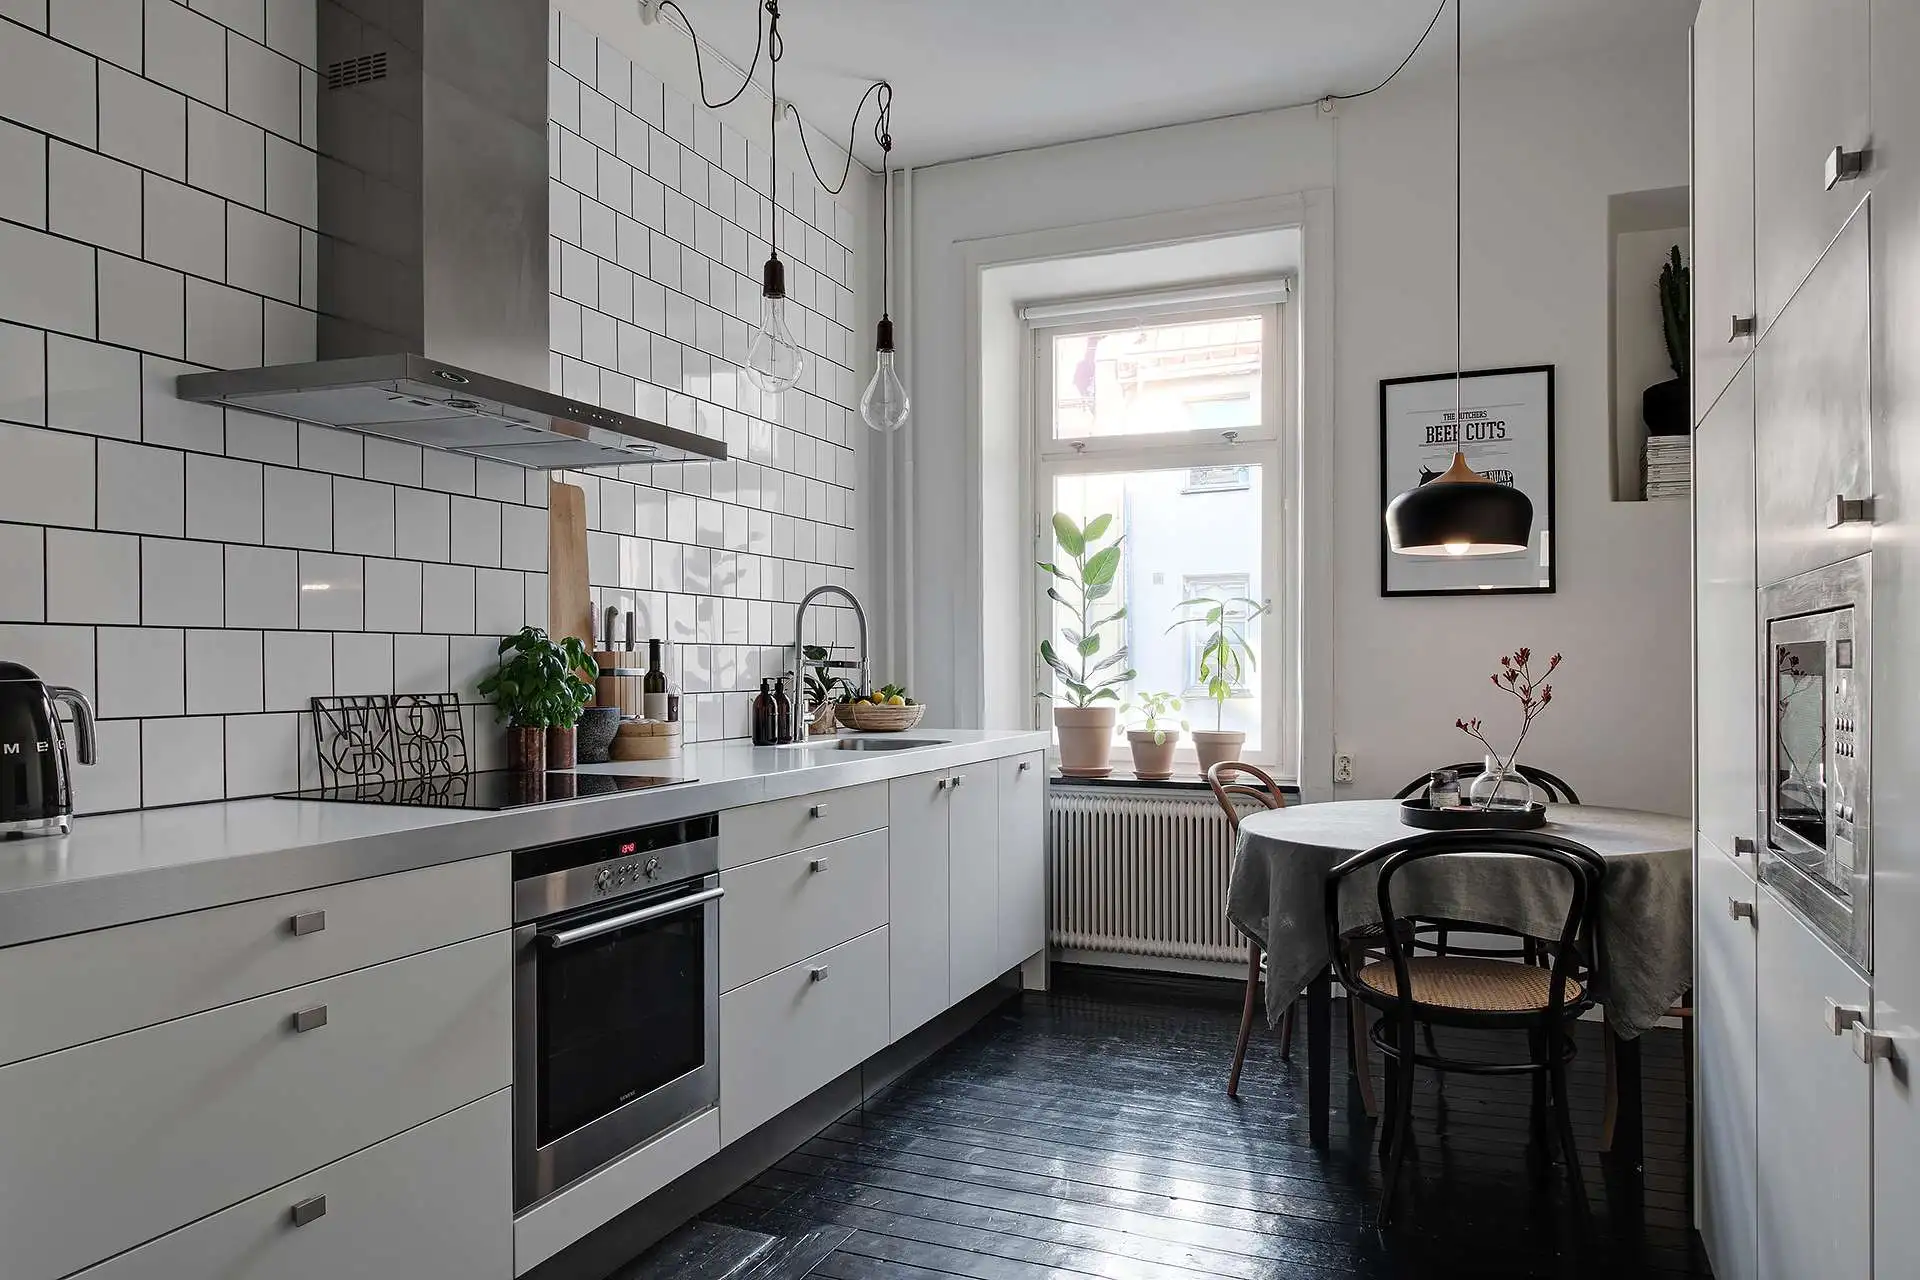 In deze mooie keuken is de houten vloer zwart geverfd, gecombineerd met een moderne witte keuken en een met witte tegels betegelde keuken achterwand.